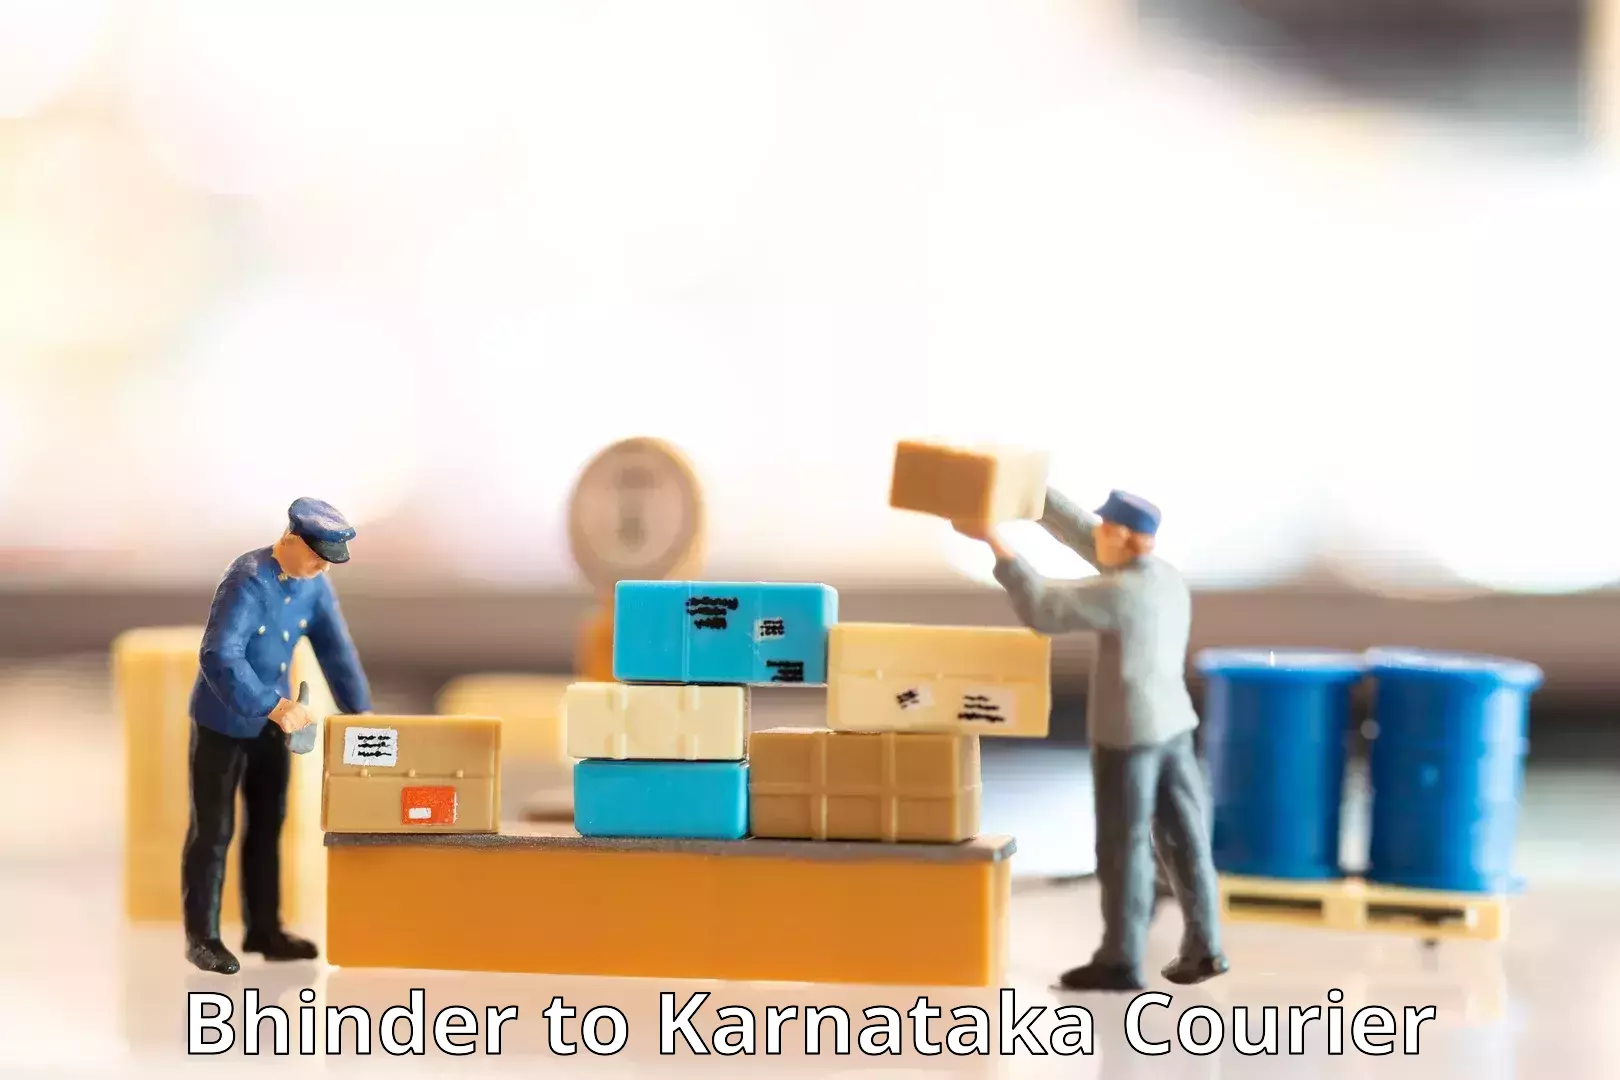 Reliable shipping partners Bhinder to Kanjarakatte